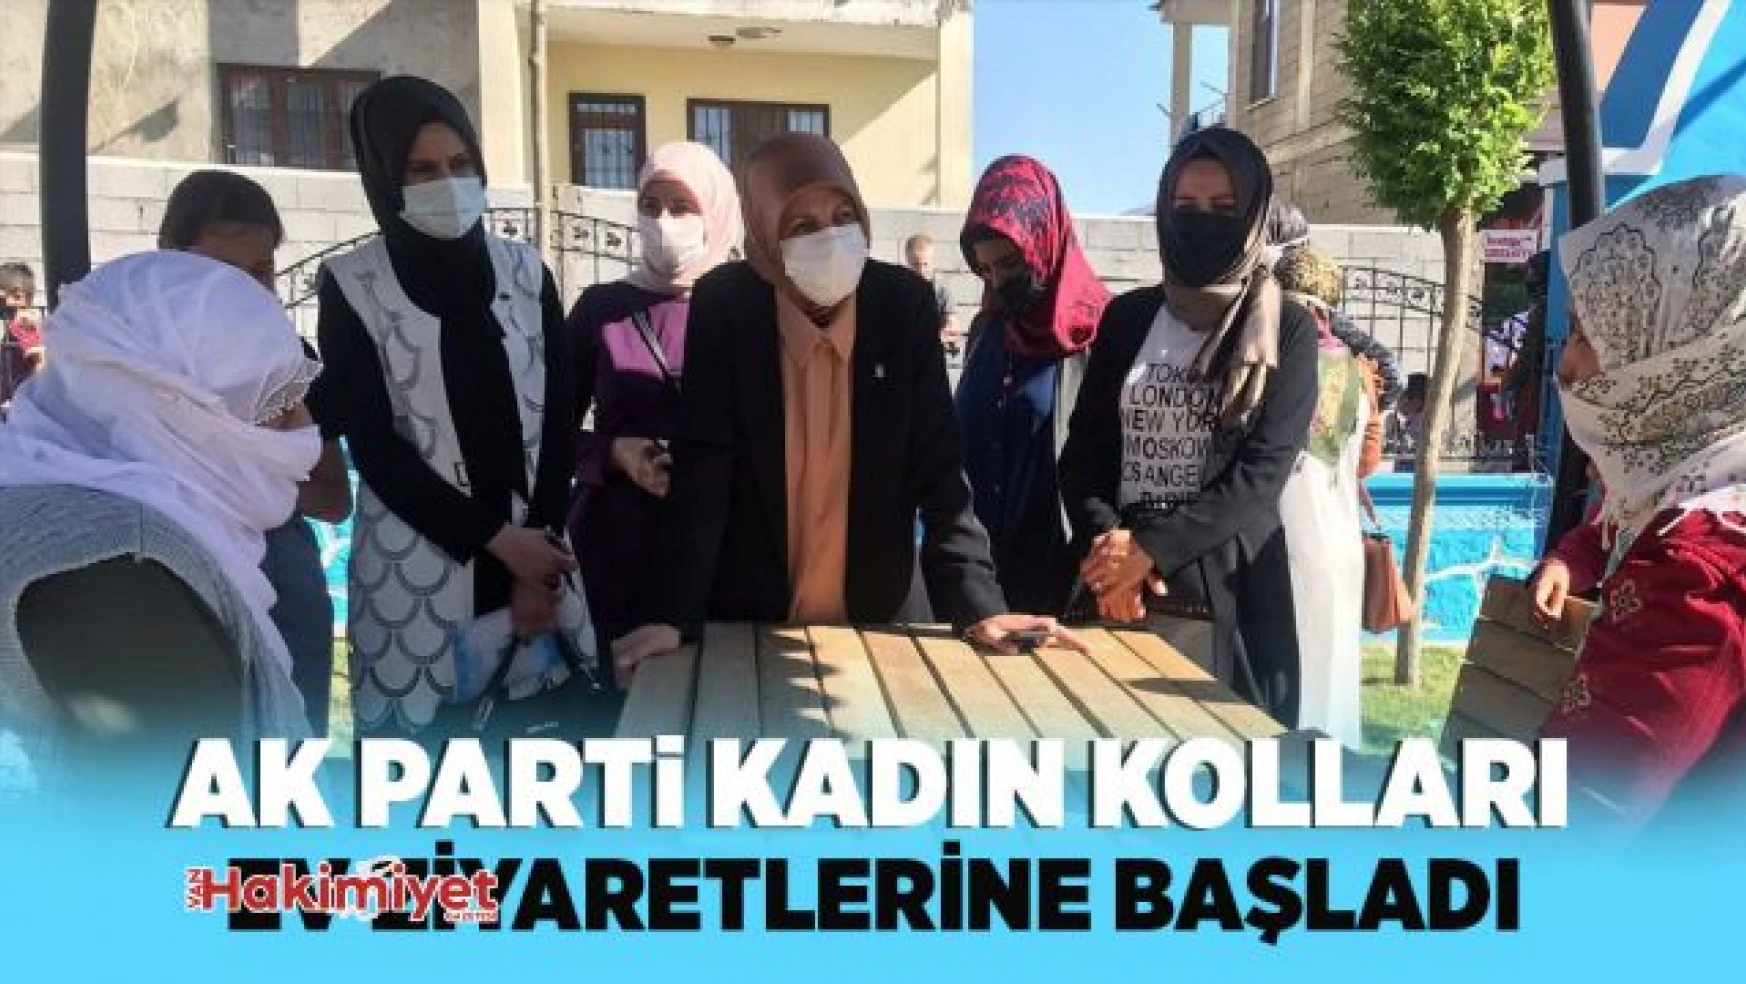 AK Parti kadın kolları ev ziyaretlerine başladı